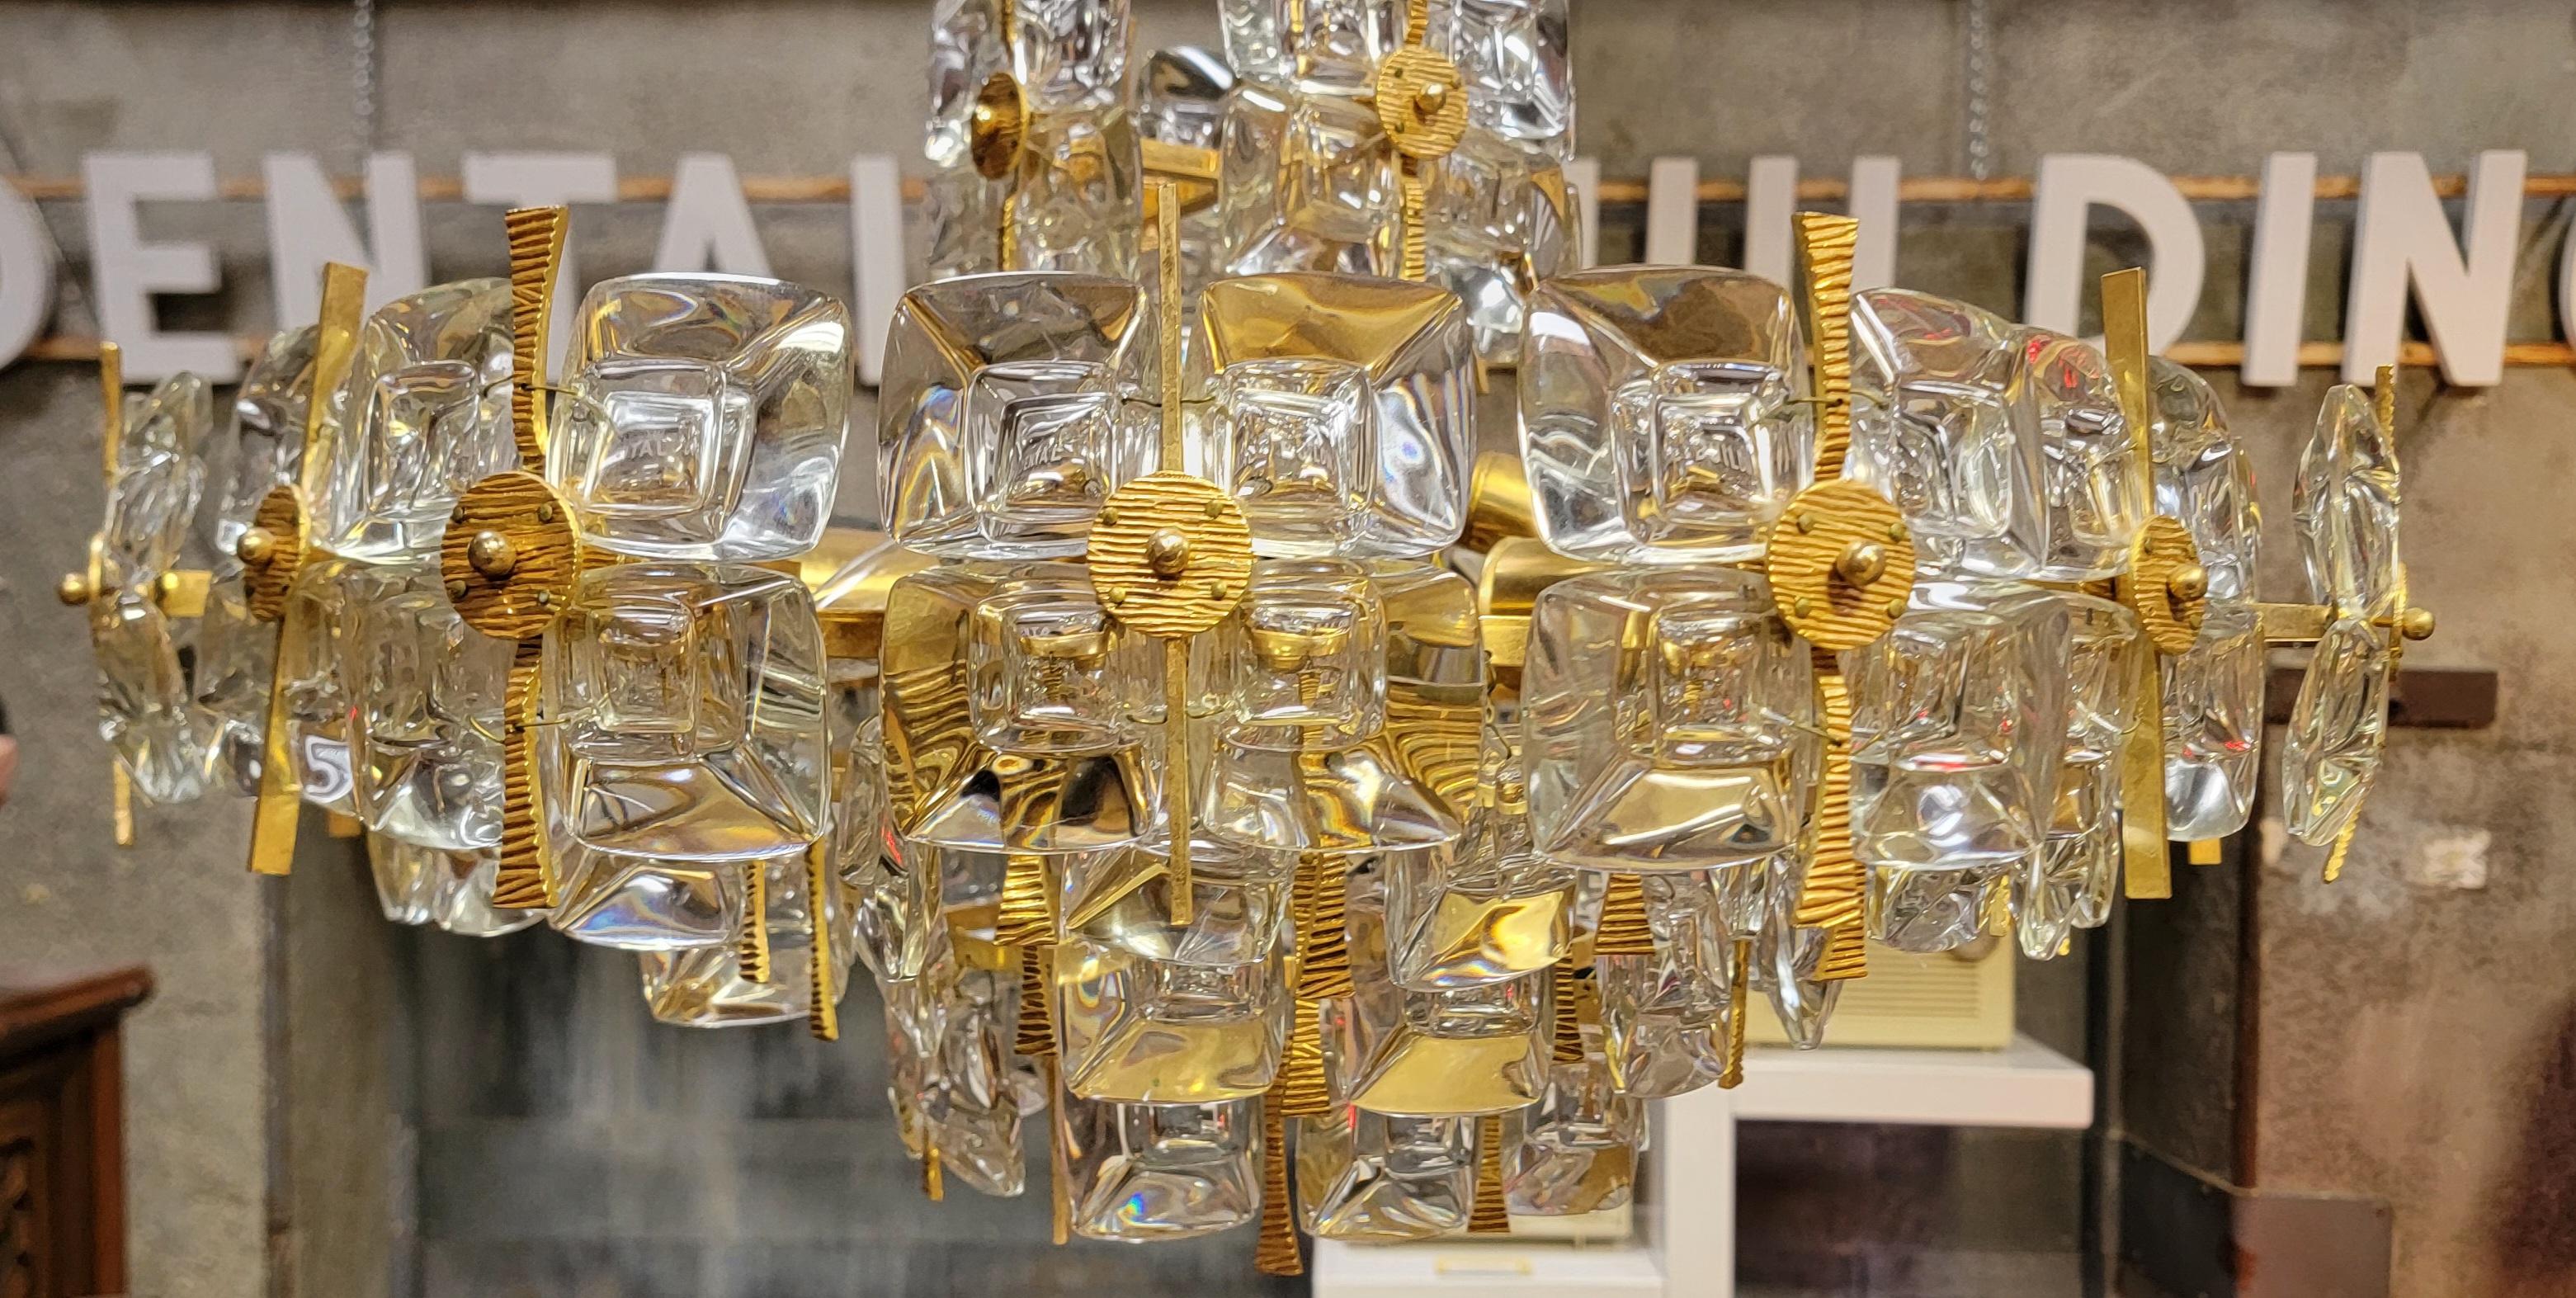 Magnifique lustre de style Mid-Century Modern / Hollywood Regency wedding cake design par Gaetano Sciolari pour Palwa, Allemagne circa. 1970's Laiton doré et cristal avec maillon de chaîne décoré d'origine et plaque d'écusson en cristal. Le lustre